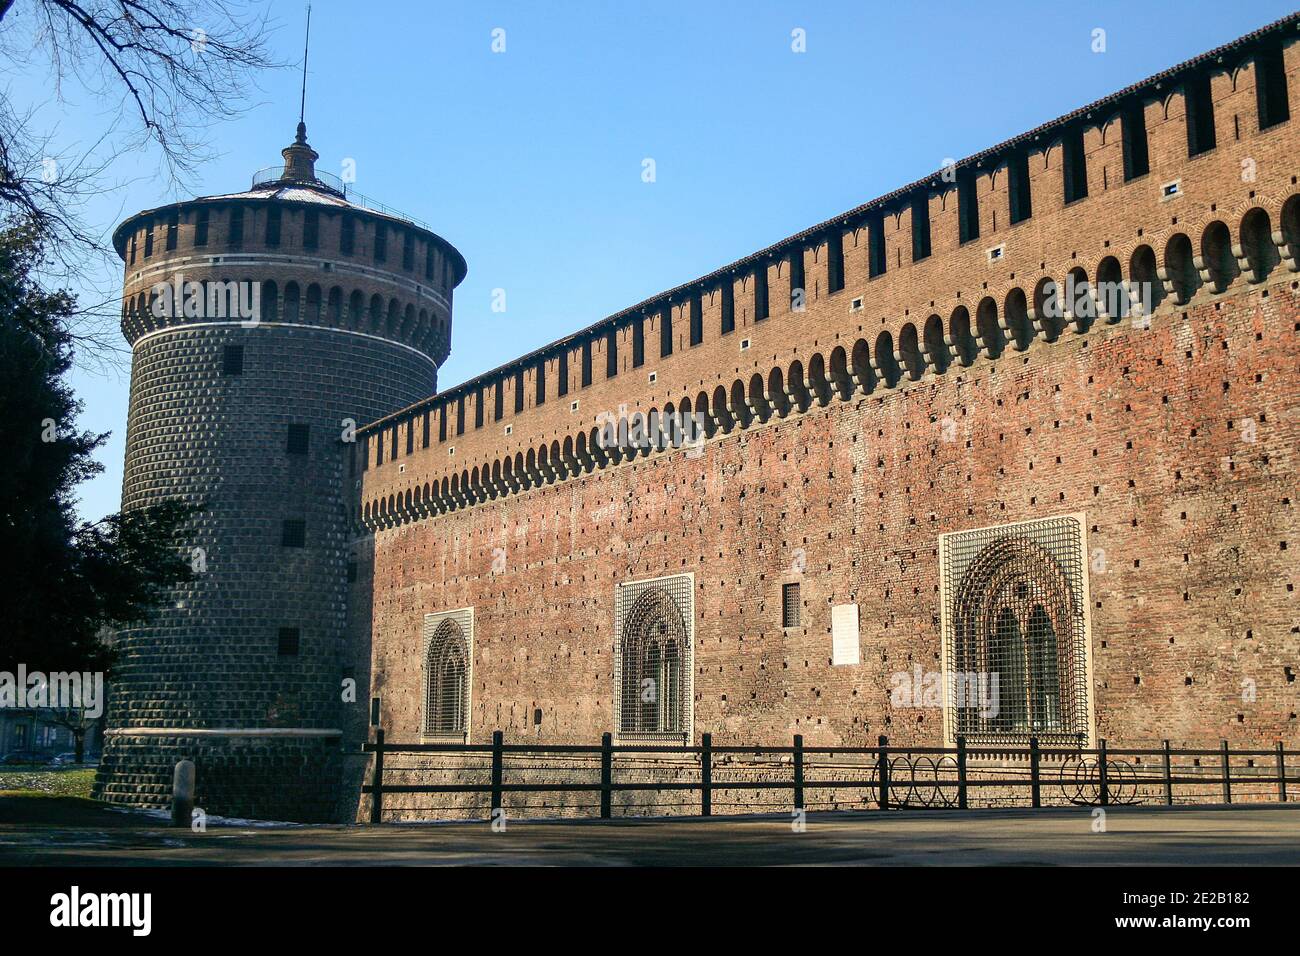 Il Castello Sforzesco di Milano, fu costruito nel XV secolo da Francesco Sforza, duca di Milano Lombardia. Punto di riferimento dell'Italia. Foto di alta qualità Foto Stock